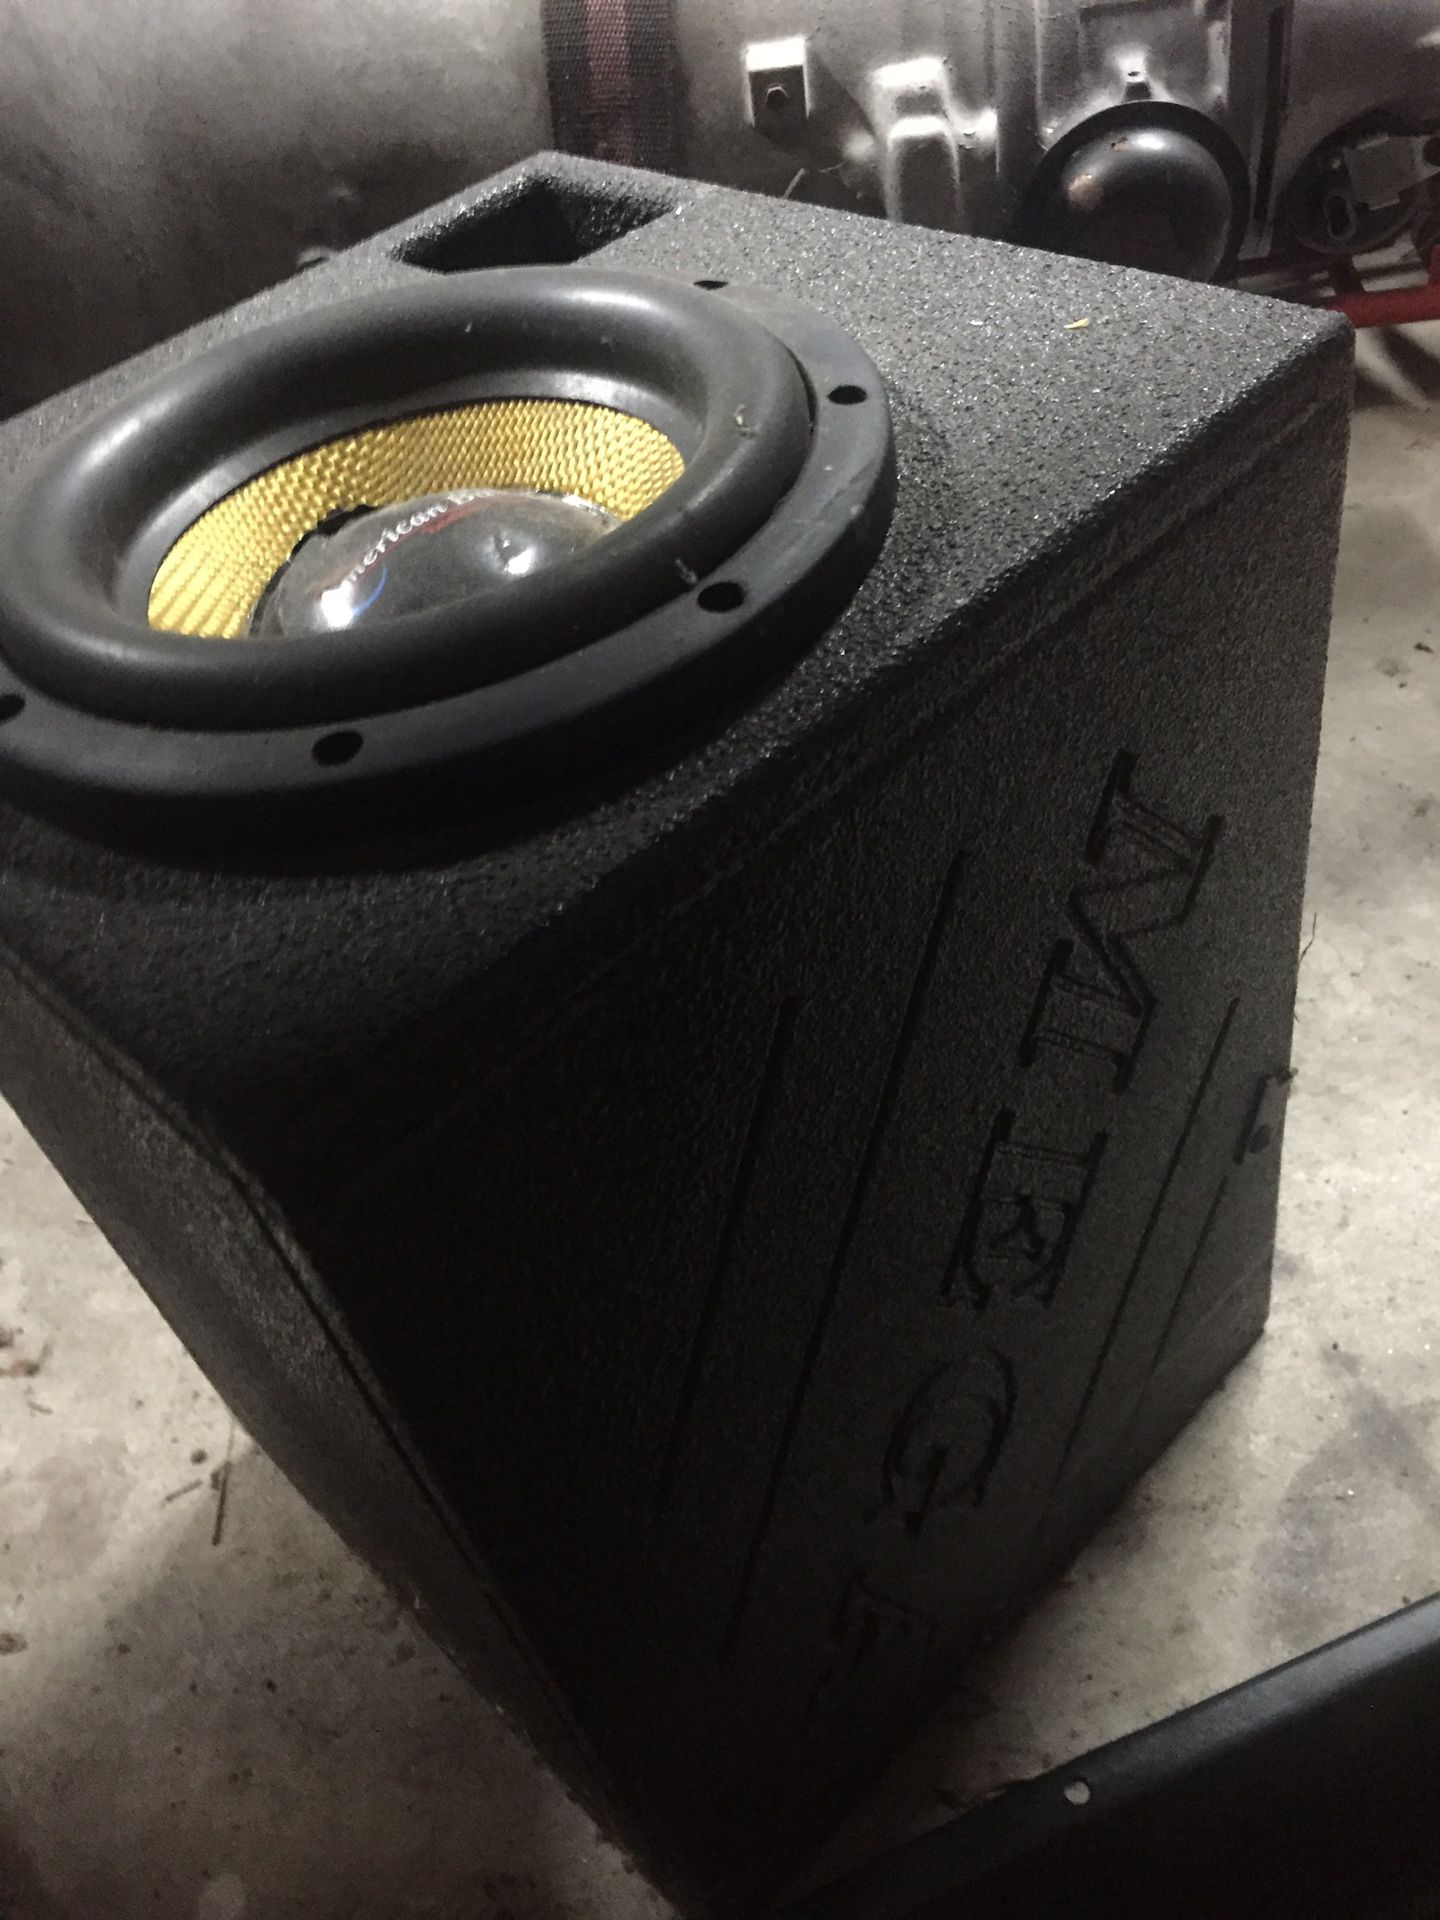 Speaker box and speaker ( 8 inch woofer )